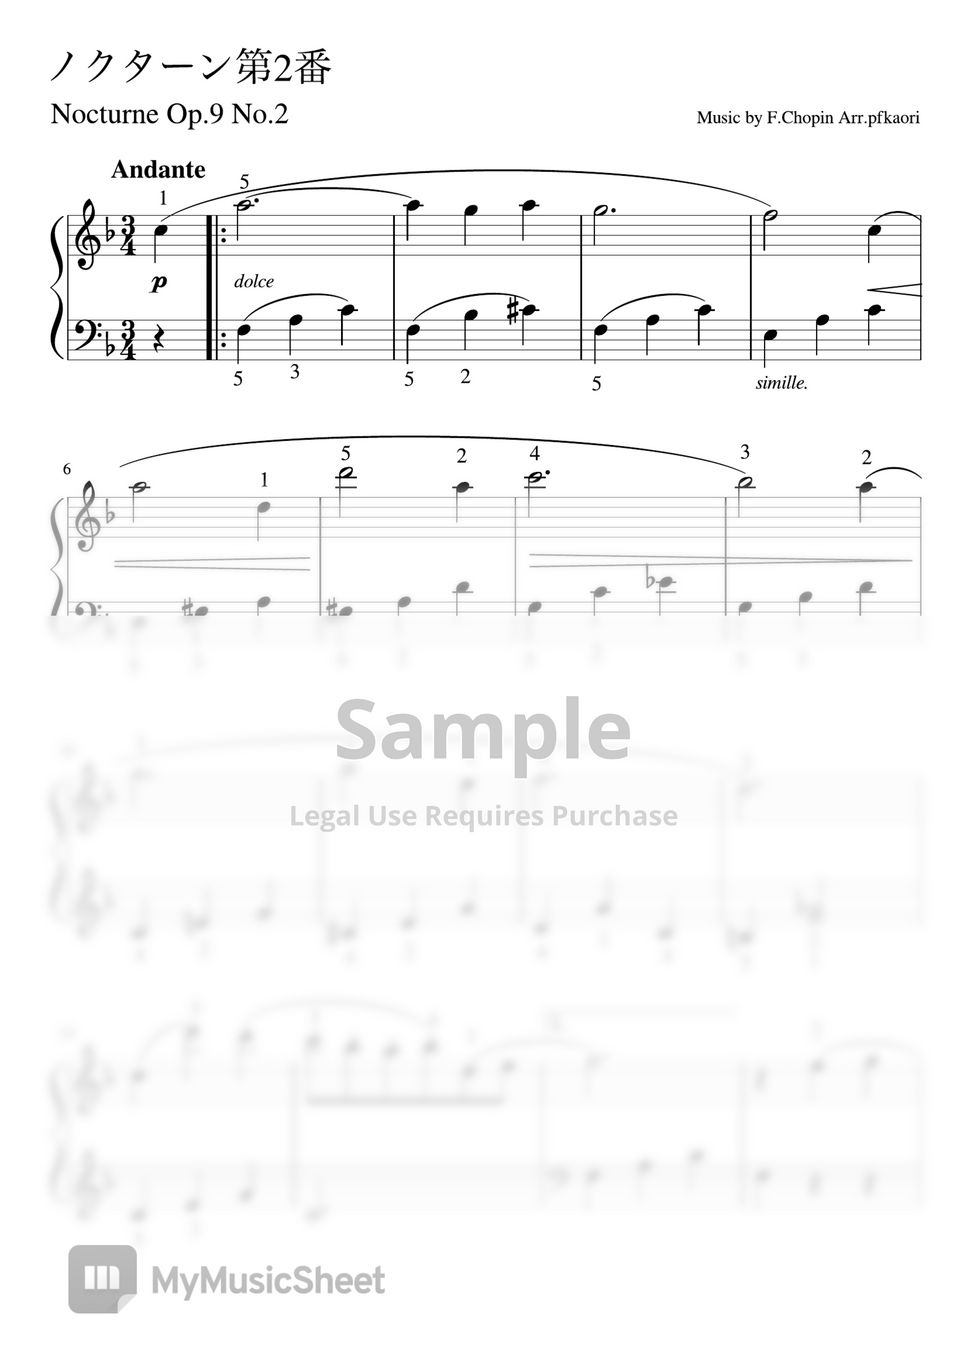 Chopin - Nocturne op.9 No.2 (F pianosolo  beginner) by pfkaori